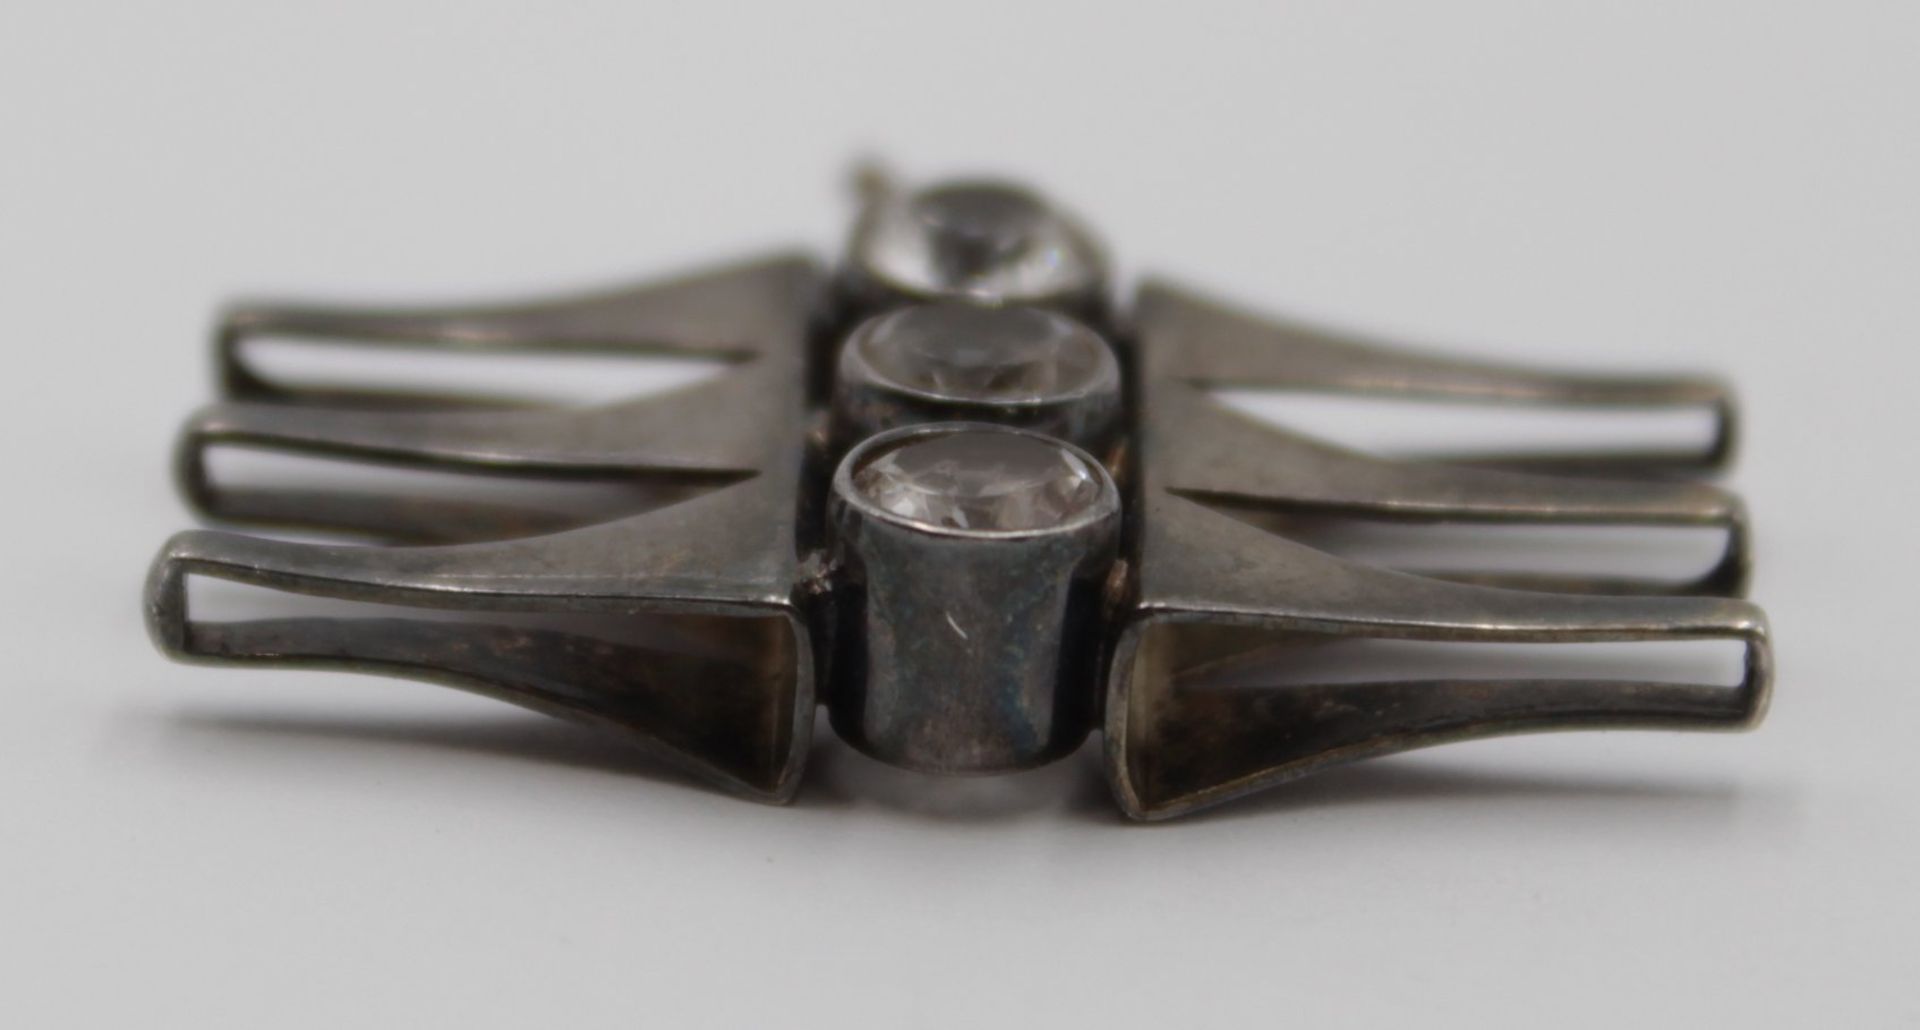 Silberanhänger, undeutl. gepunzt, besetzt mit klaren Steinen, 4,8gr., 2,5 x 3,3cm. - Bild 4 aus 4